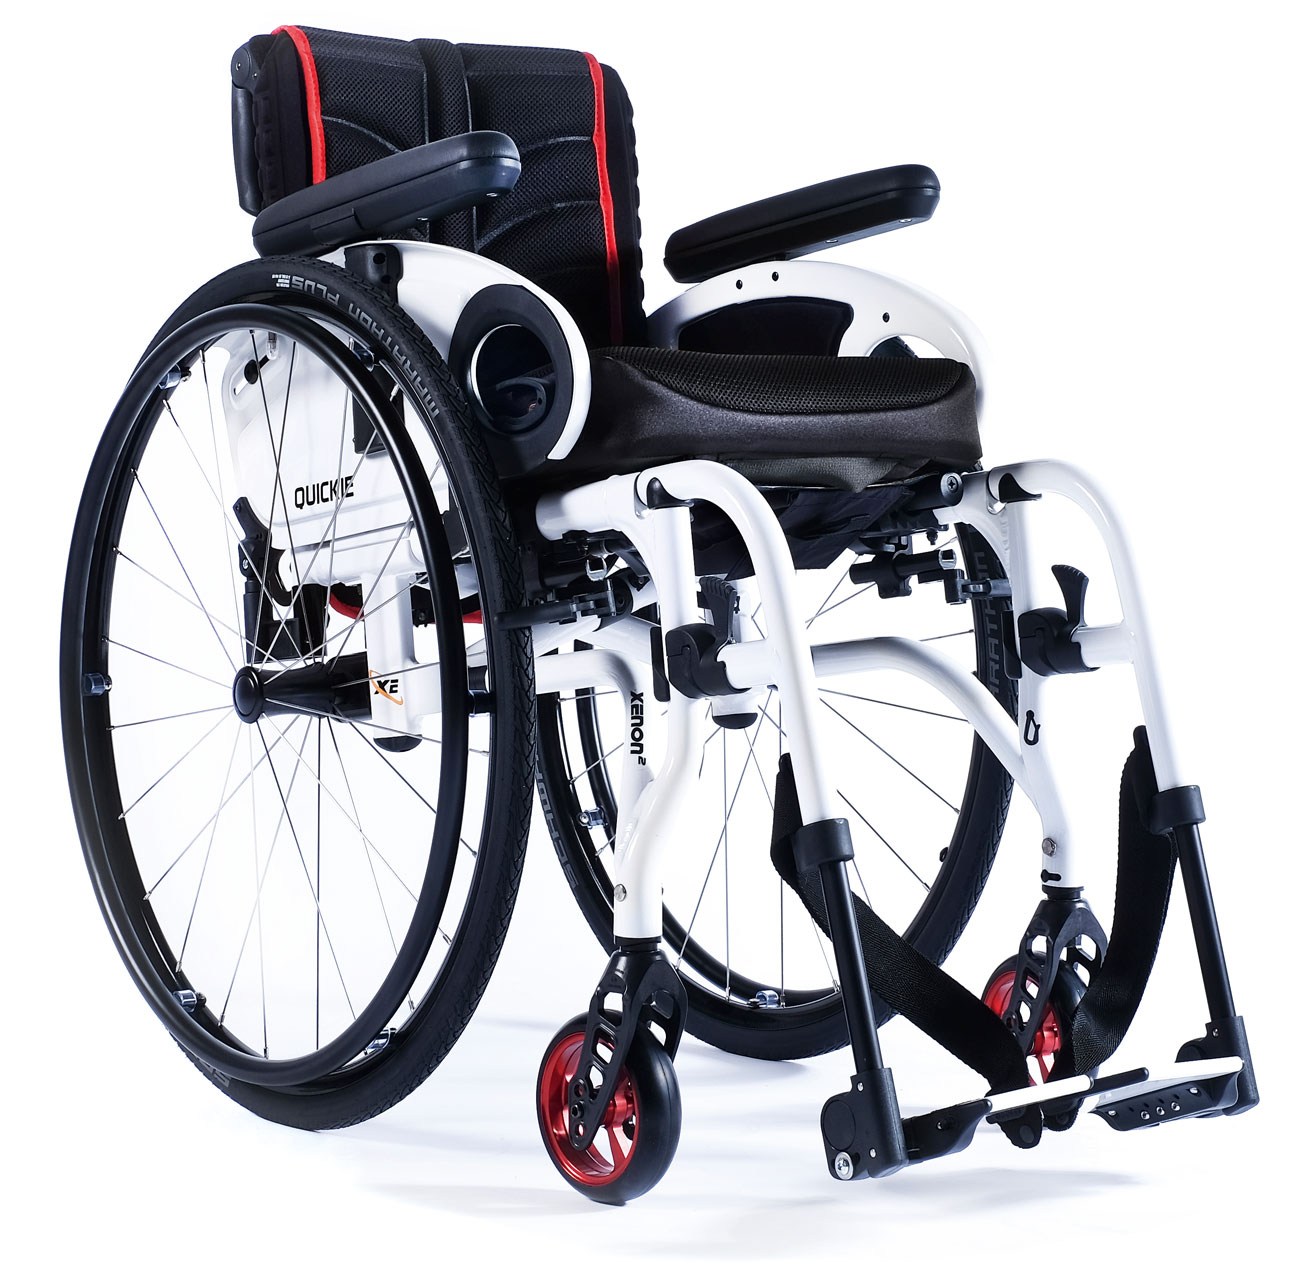 Активная инвалидная коляска купить. Инвалидная коляска Quickie Xenon 2. Sopur инвалидные коляски. Коляска Сопур ксенон 2. Xenon инвалидная коляска активного типа.